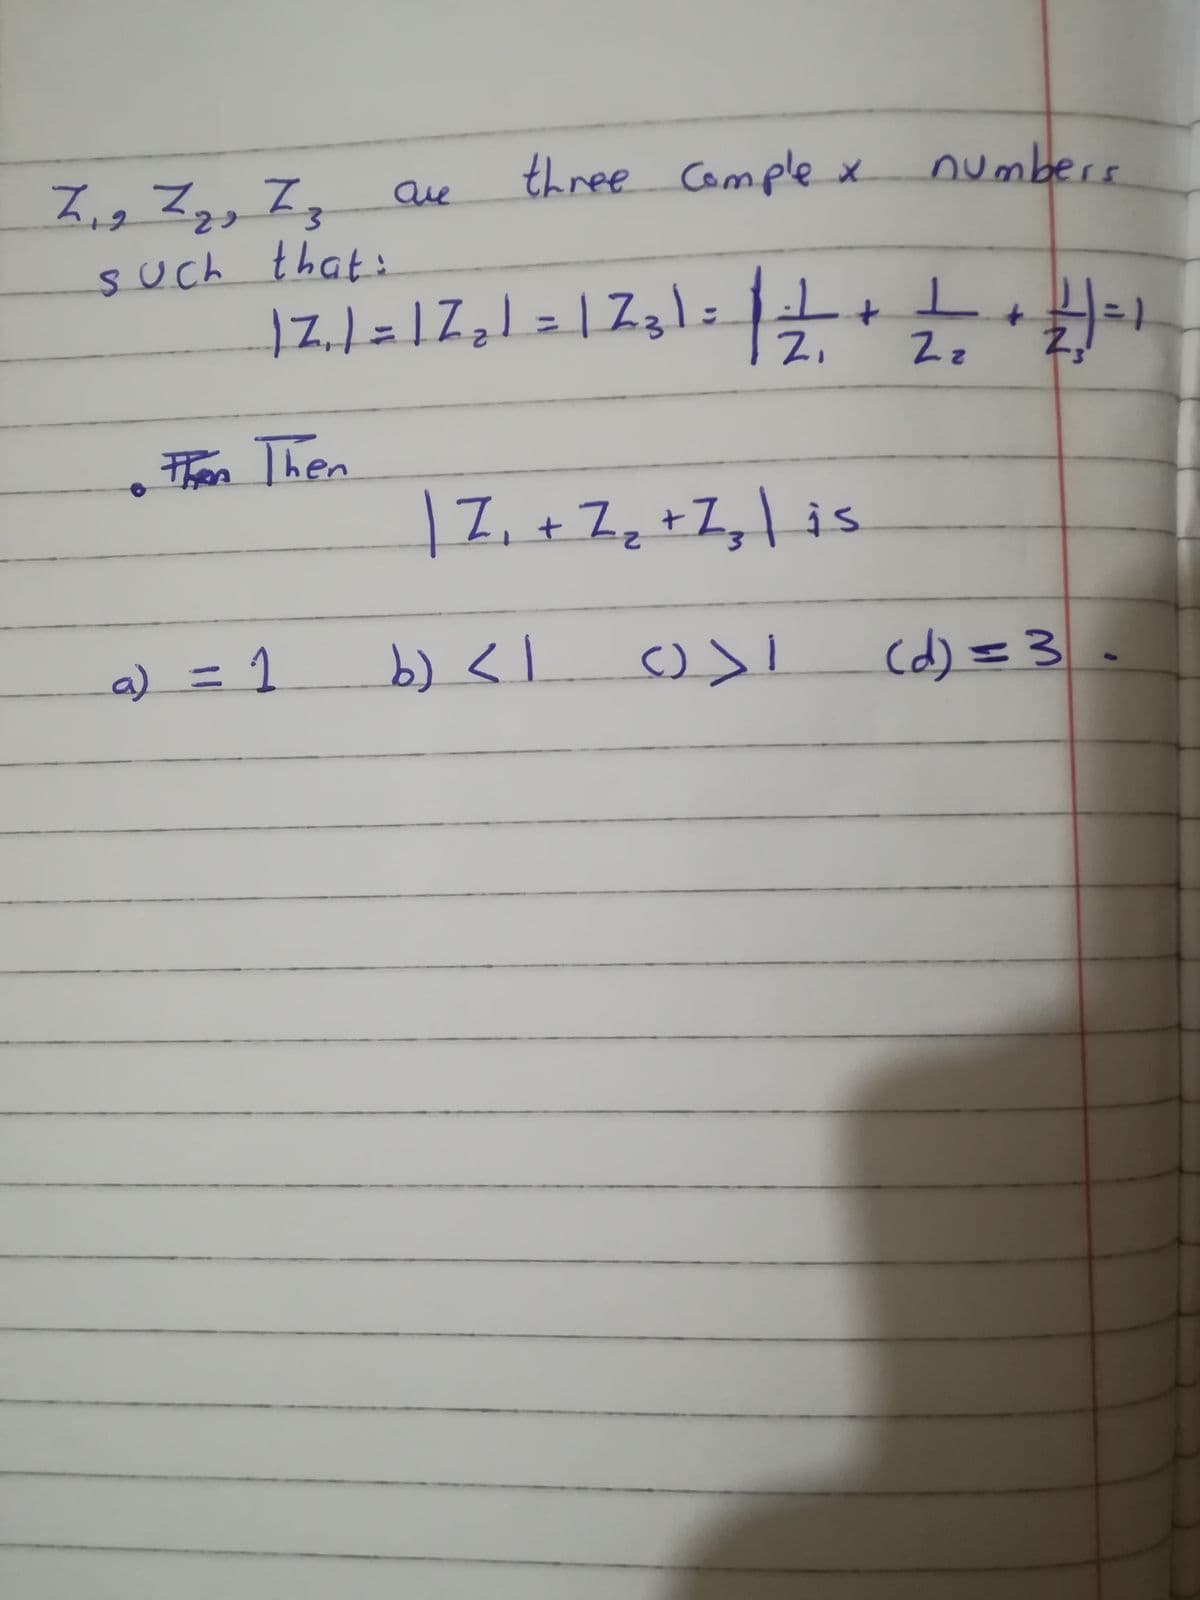 Z,, Z,, I, aue
three Comple x numbers
such that:
%3D
Z,
2z
thon Then
|7, + Zq +Z,\ is
Li+Zz
a) =
b) <.
cd) =3.
